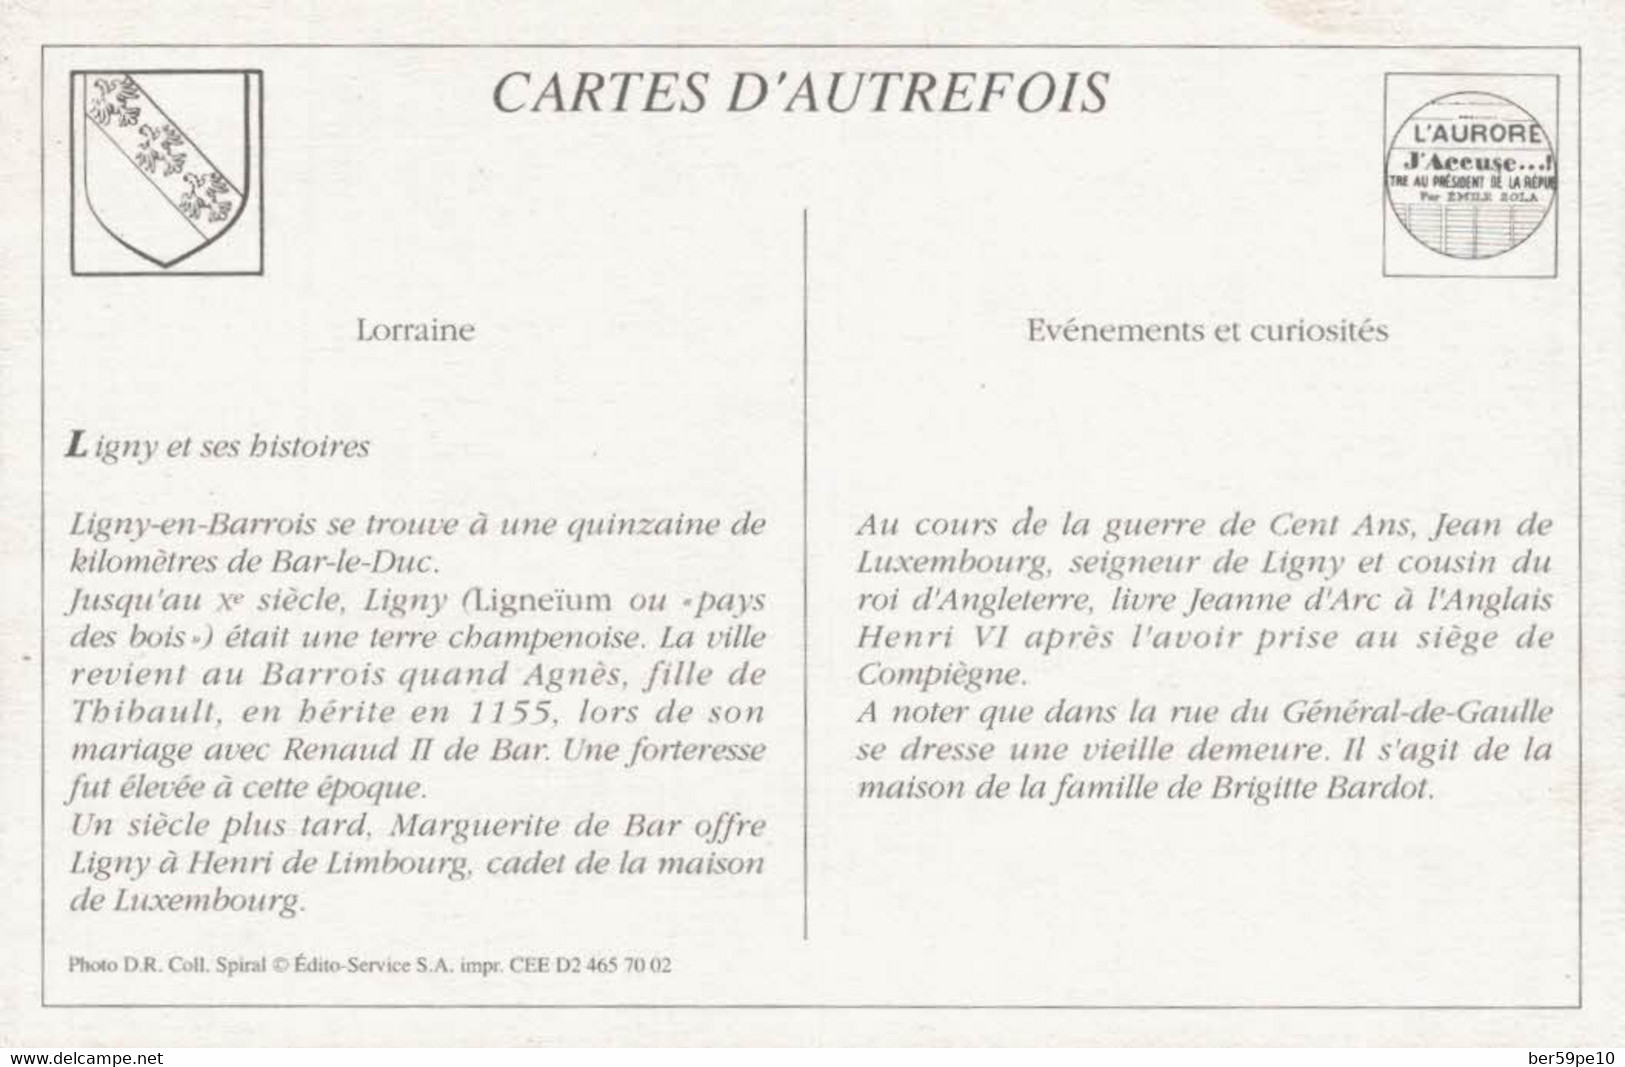 CARTE D'AUTREFOIS  EVENEMENT ET CURIOSITES LORRAINE LIGNY ET SES HISTOIRES - Lorraine